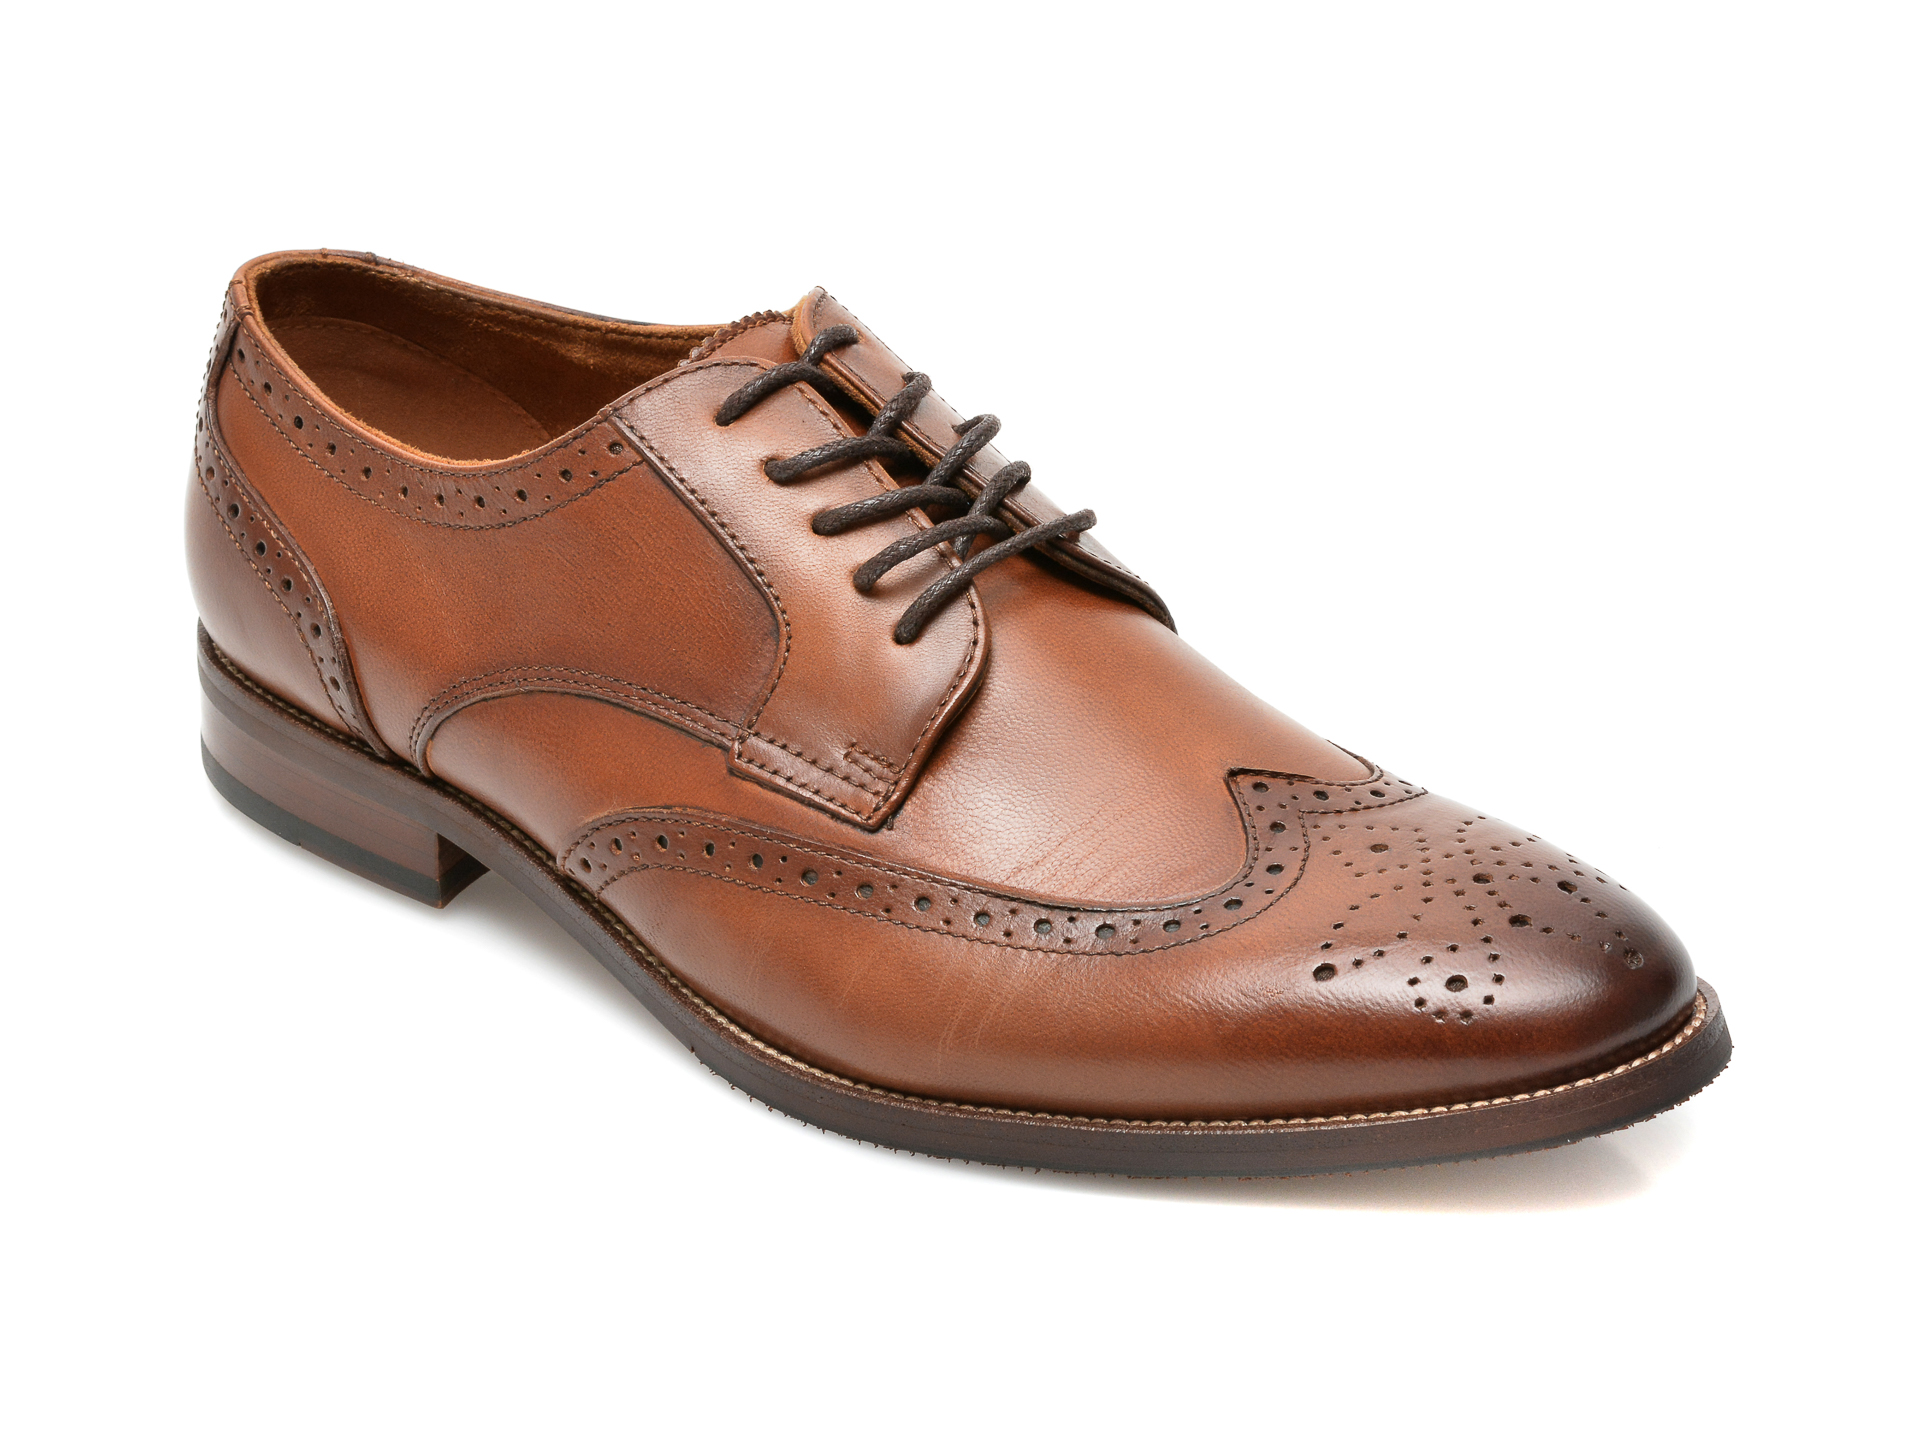 Pantofi ALDO maro, Larethienflex220, din piele naturala Aldo imagine 2022 reducere